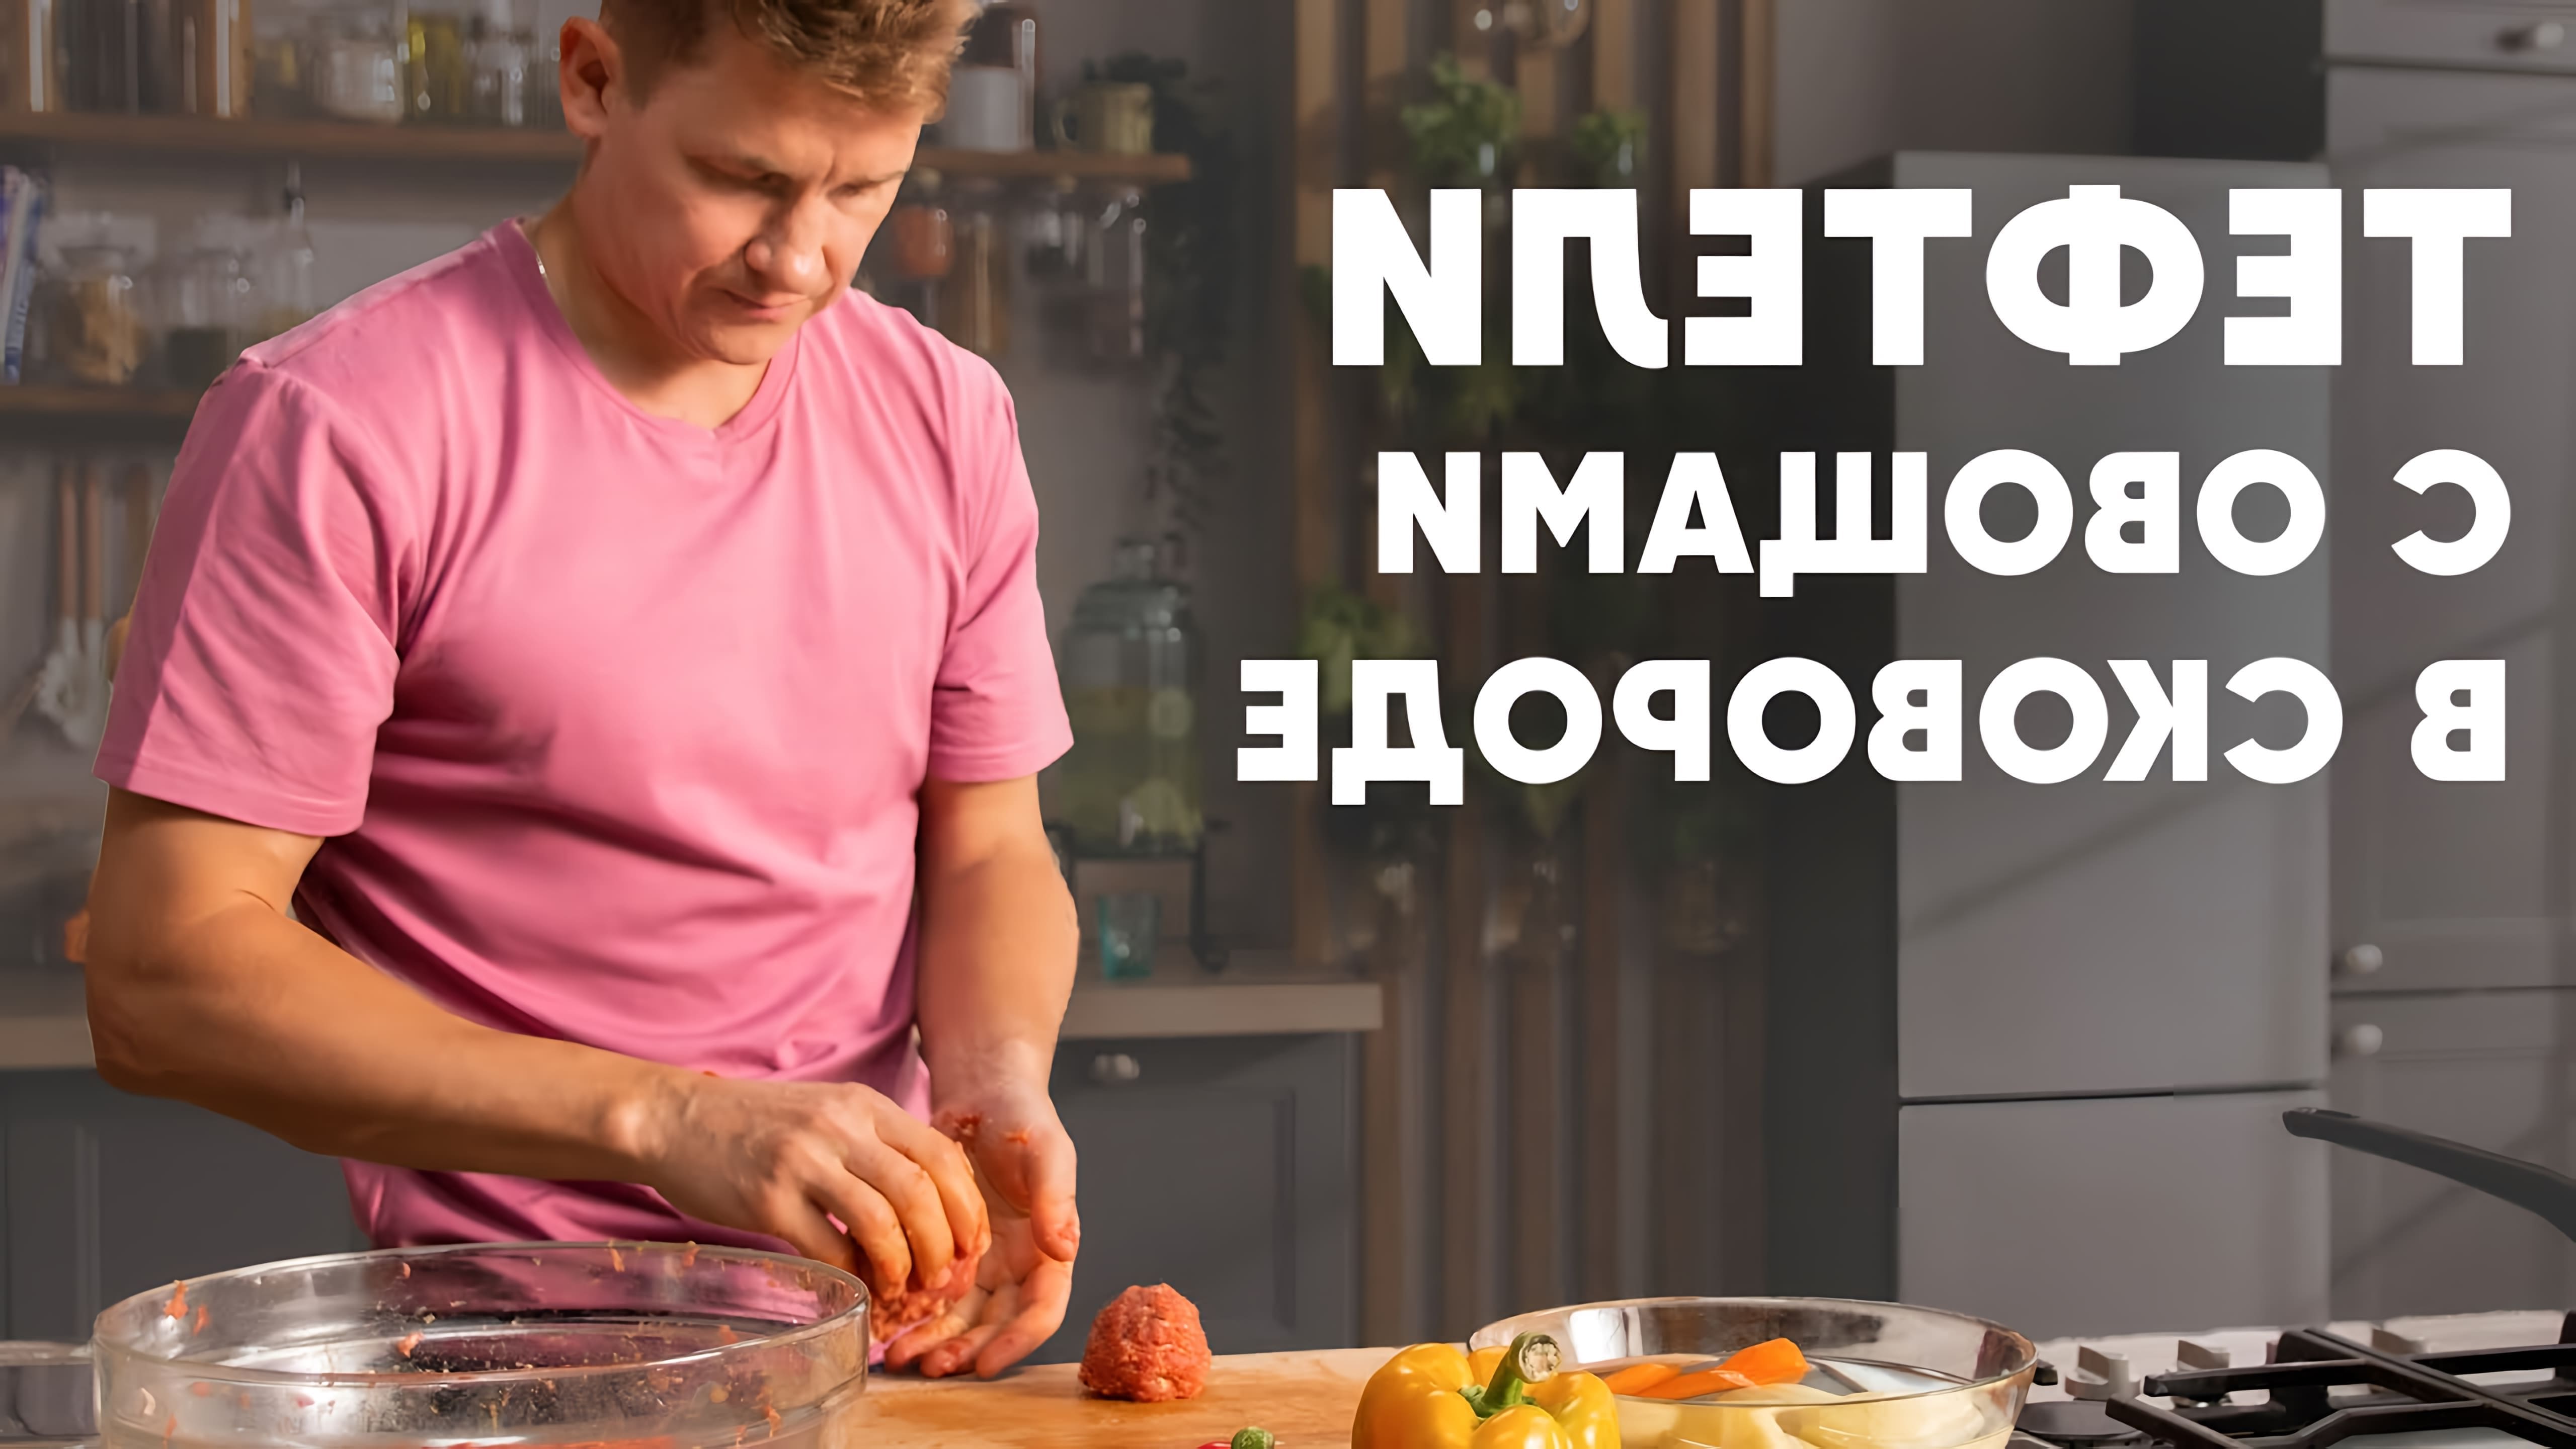 В этом видео шеф Белькович показывает, как приготовить фантастические тефтели с овощами в одной сковородке